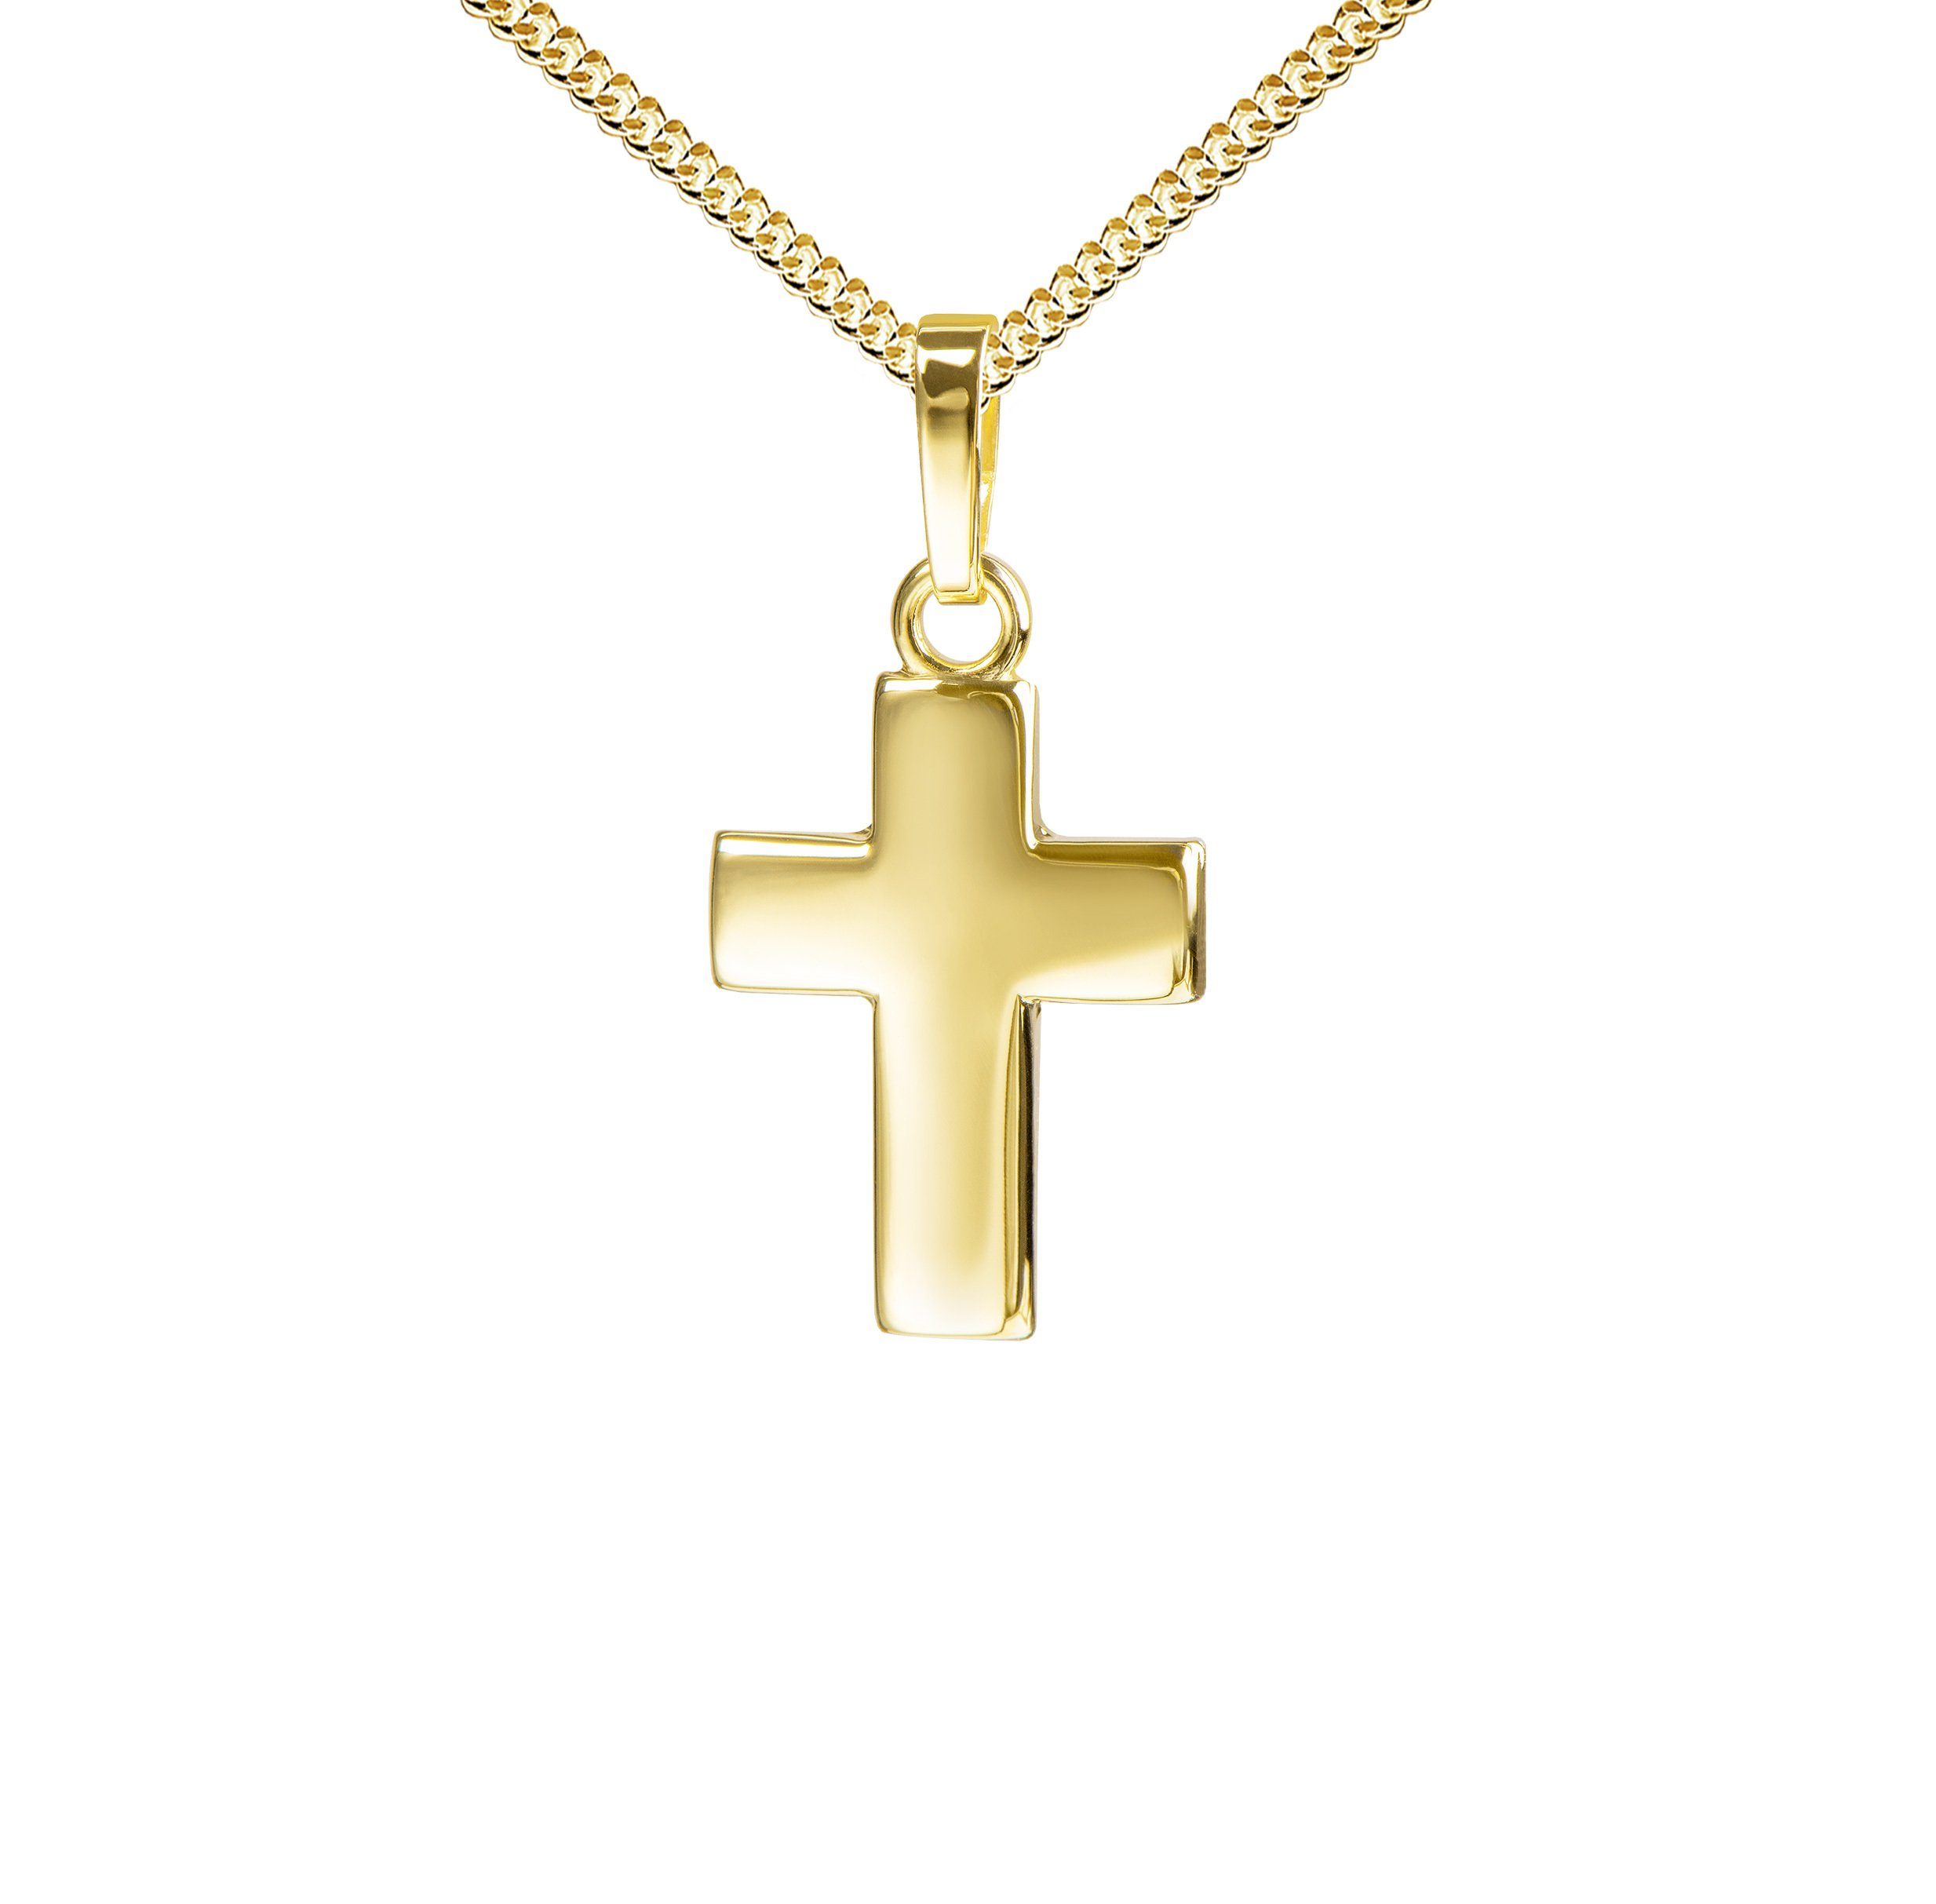 JEVELION Kreuzkette kleiner Kreuzanhänger 585 Gold - Made in Germany (Goldkreuz, für Damen und Kinder), Mit Kette vergoldet- Länge wählbar 36 - 70 cm oder ohne Kette. | Kreuzketten